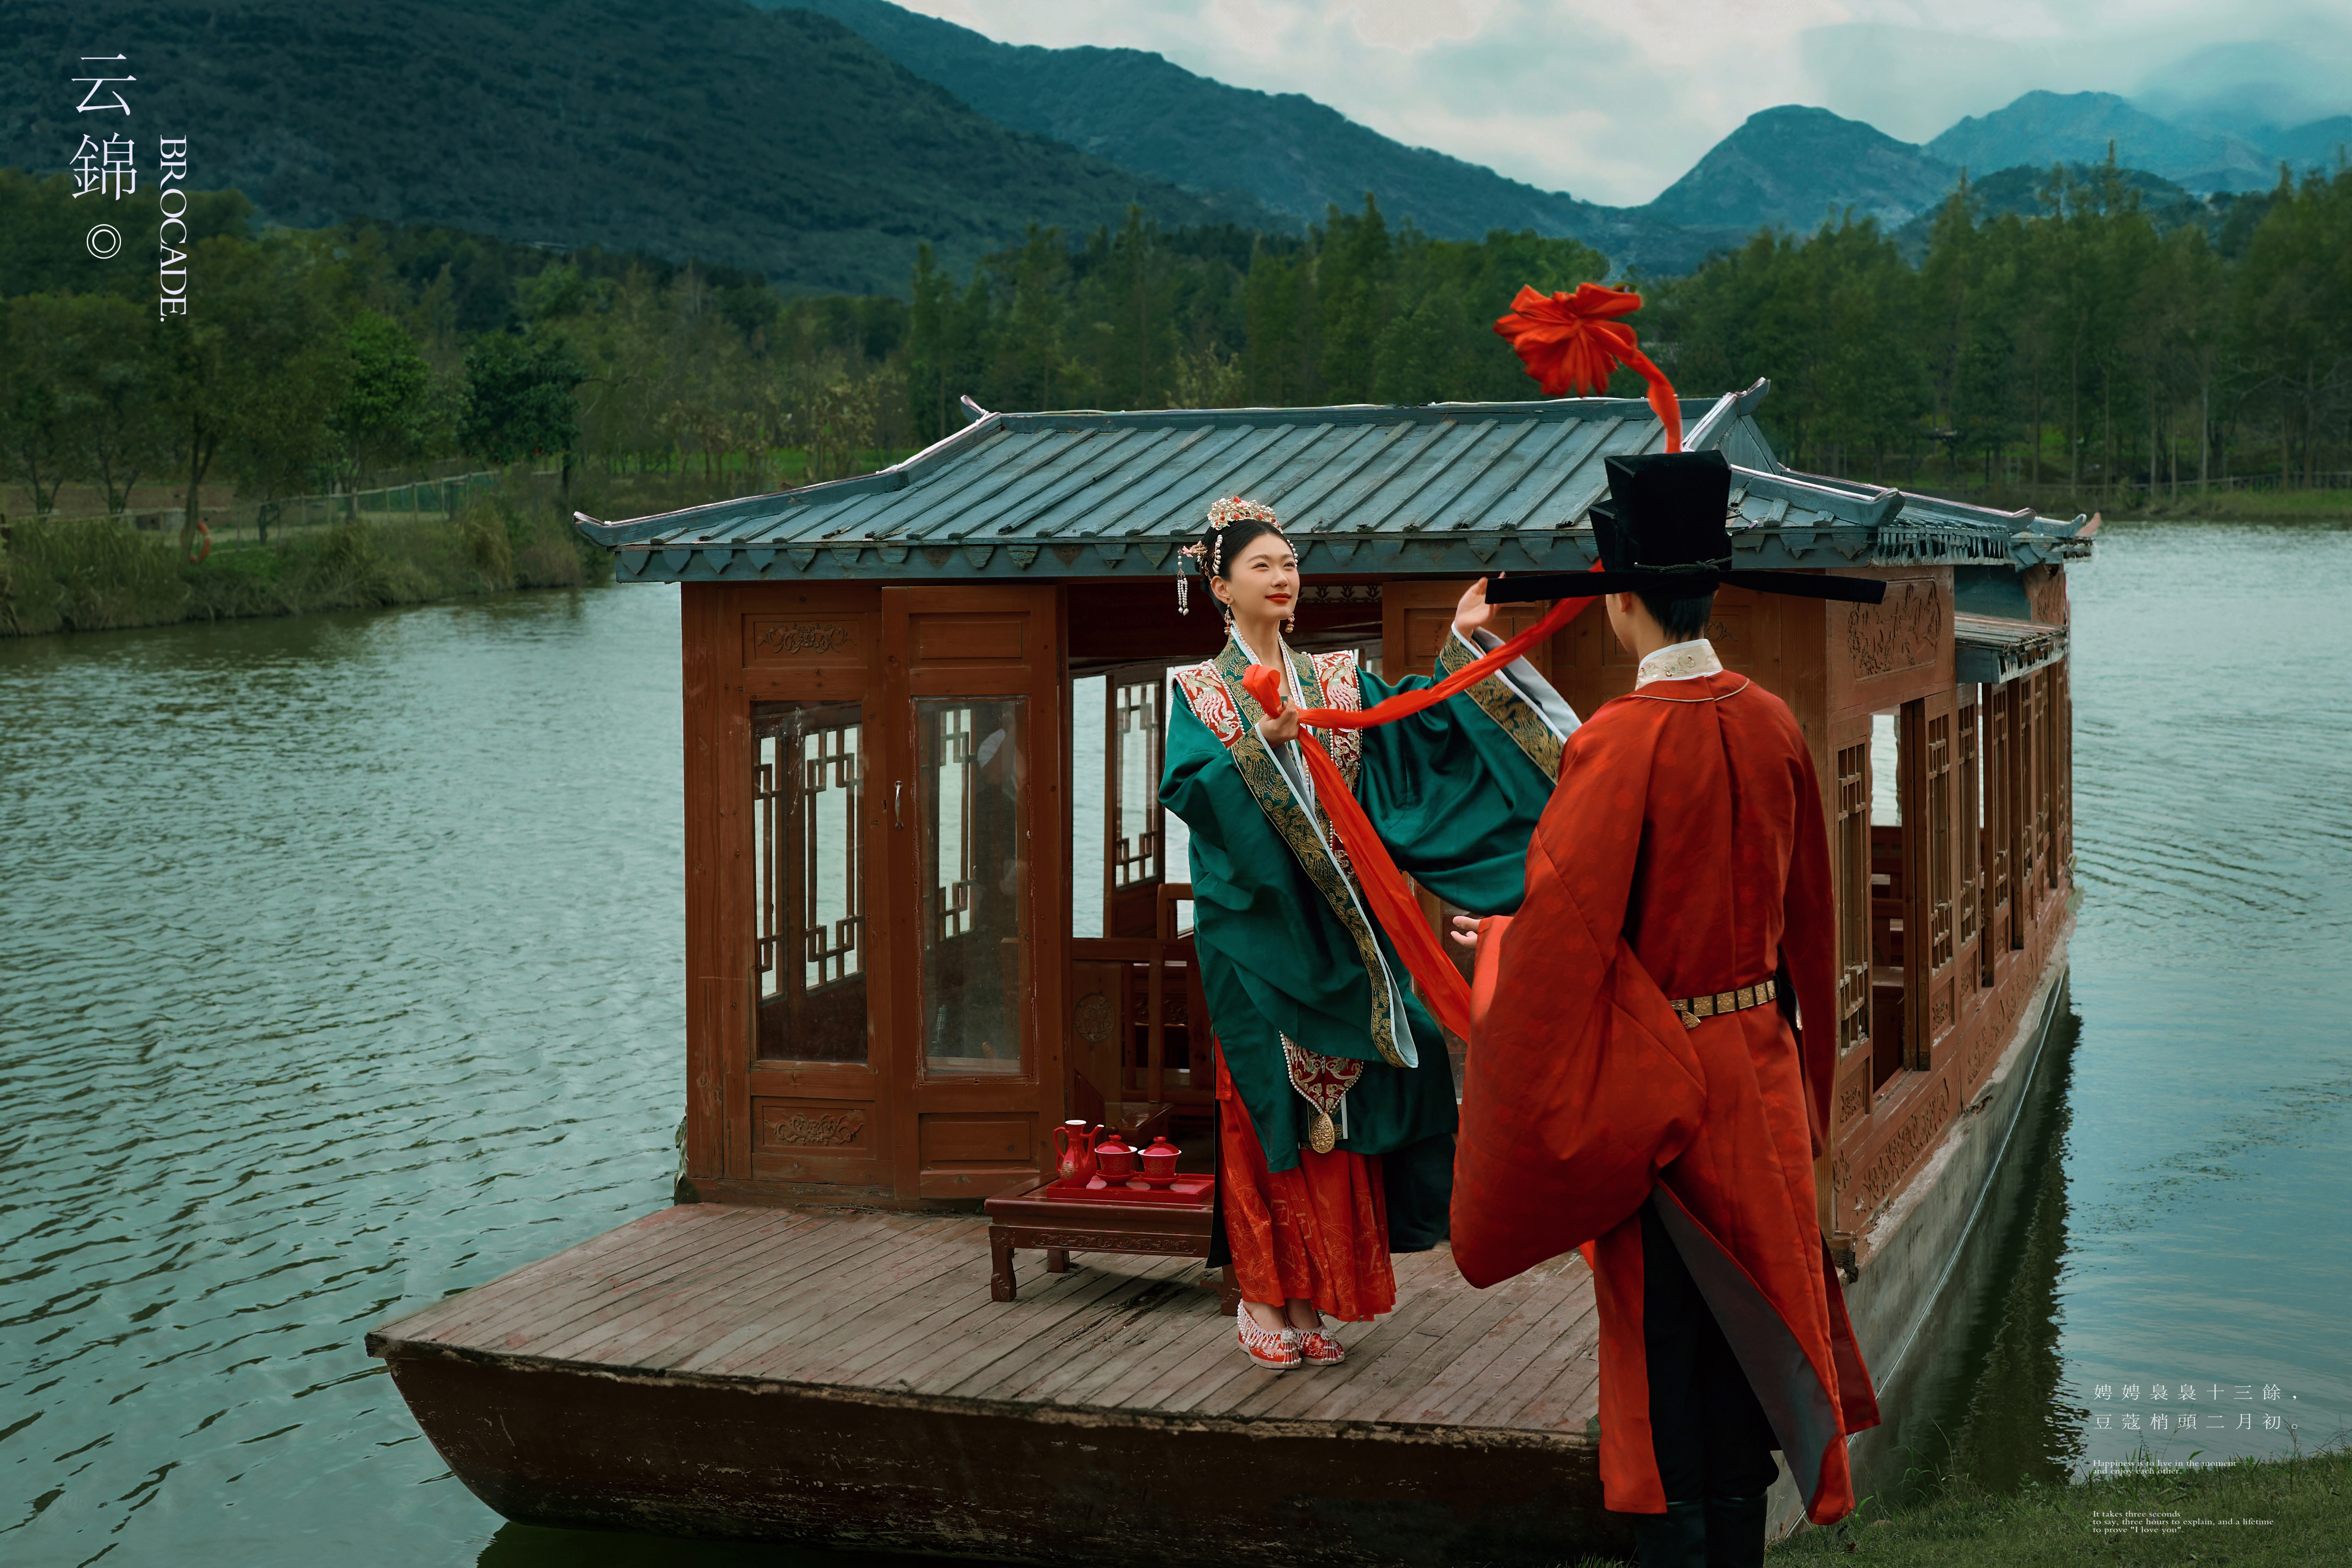 【中式喜嫁】中国新娘的锦绣嫁衣 婚纱照